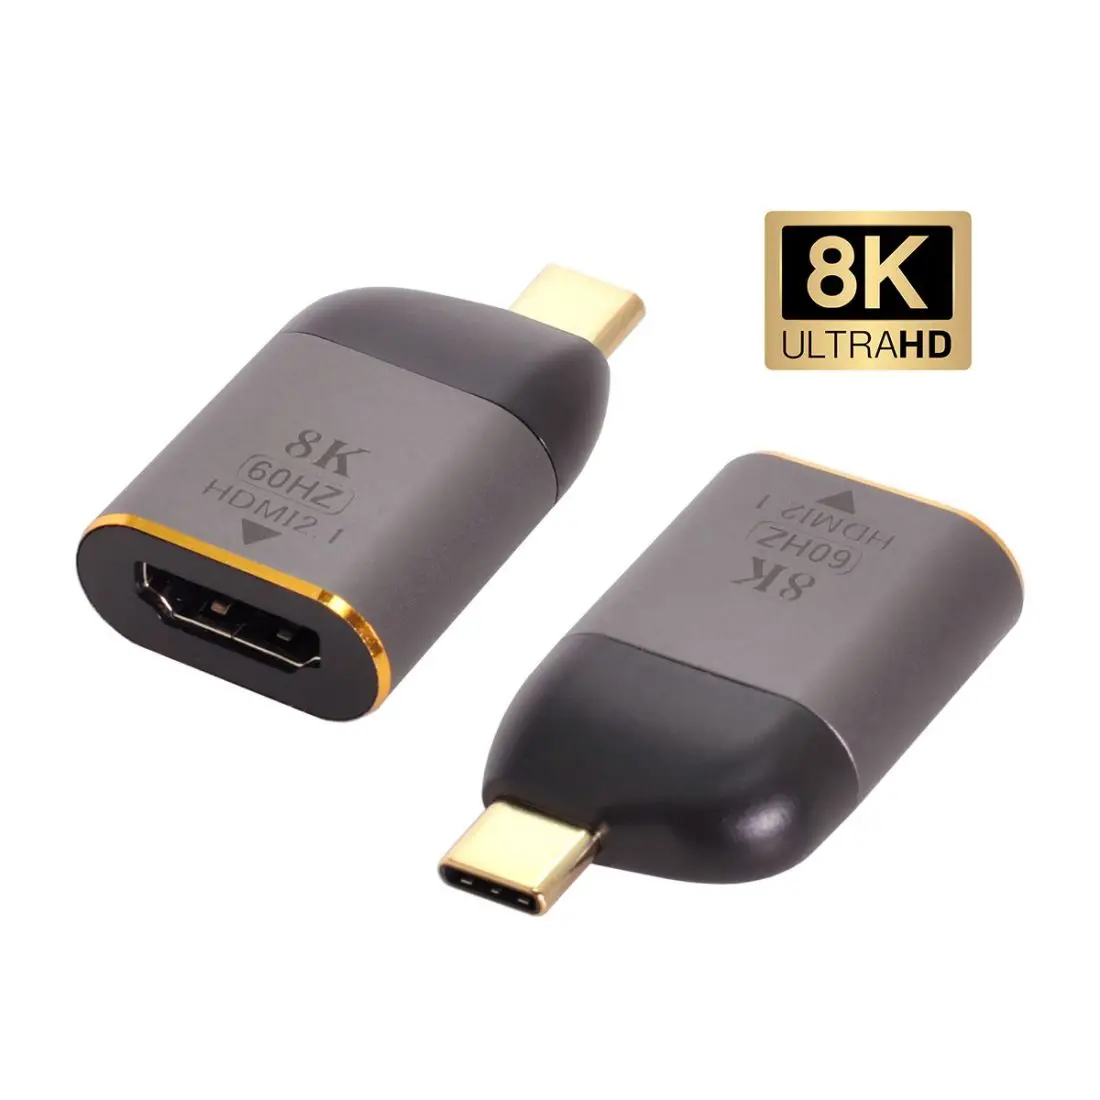 

Адаптер для монитора HDTV CYSM Xiwai USB4 USB-C Type-C папа от источника к HDTV 2,0 мама дисплей 8K 60 Гц UHD 4K